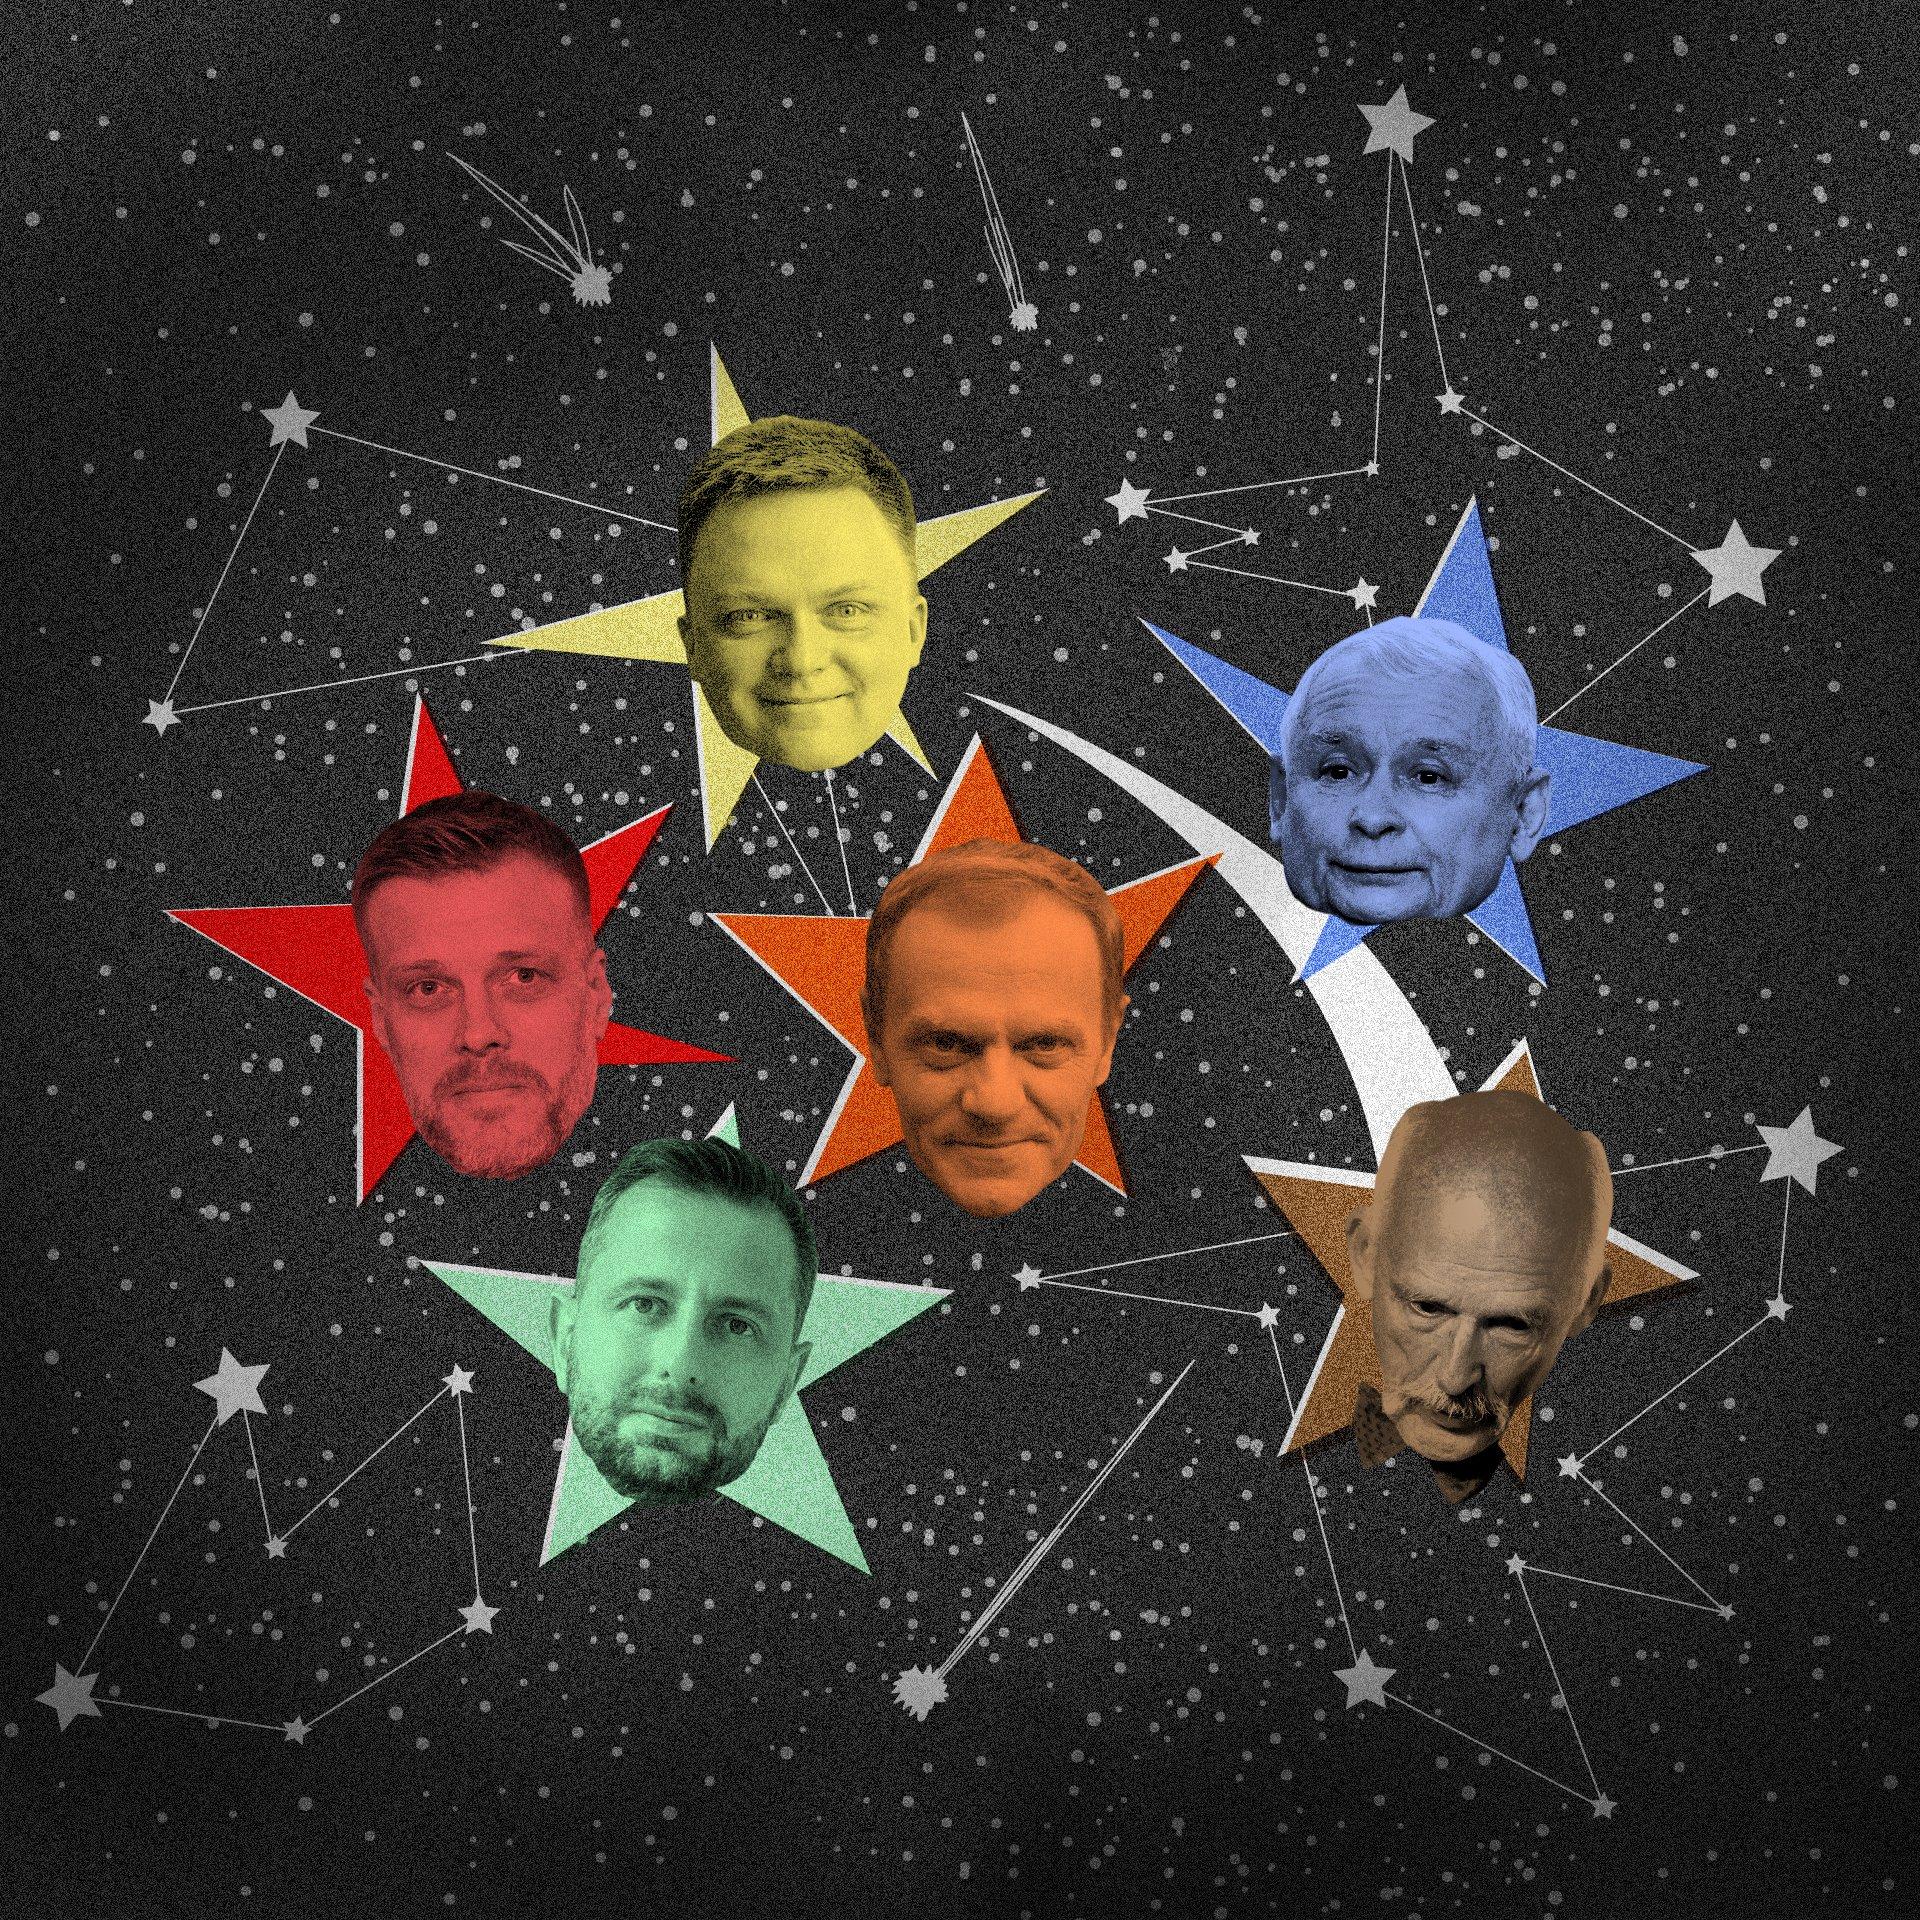 Głowy sześciu liderów politycznych: Kaczyńskiego, Tuska, Hołowni, Zandberga, Kosiniak-Kamysza, Korwin-Mikkego. Wszystkie są wpisane w konstelację gwiazdozbioru